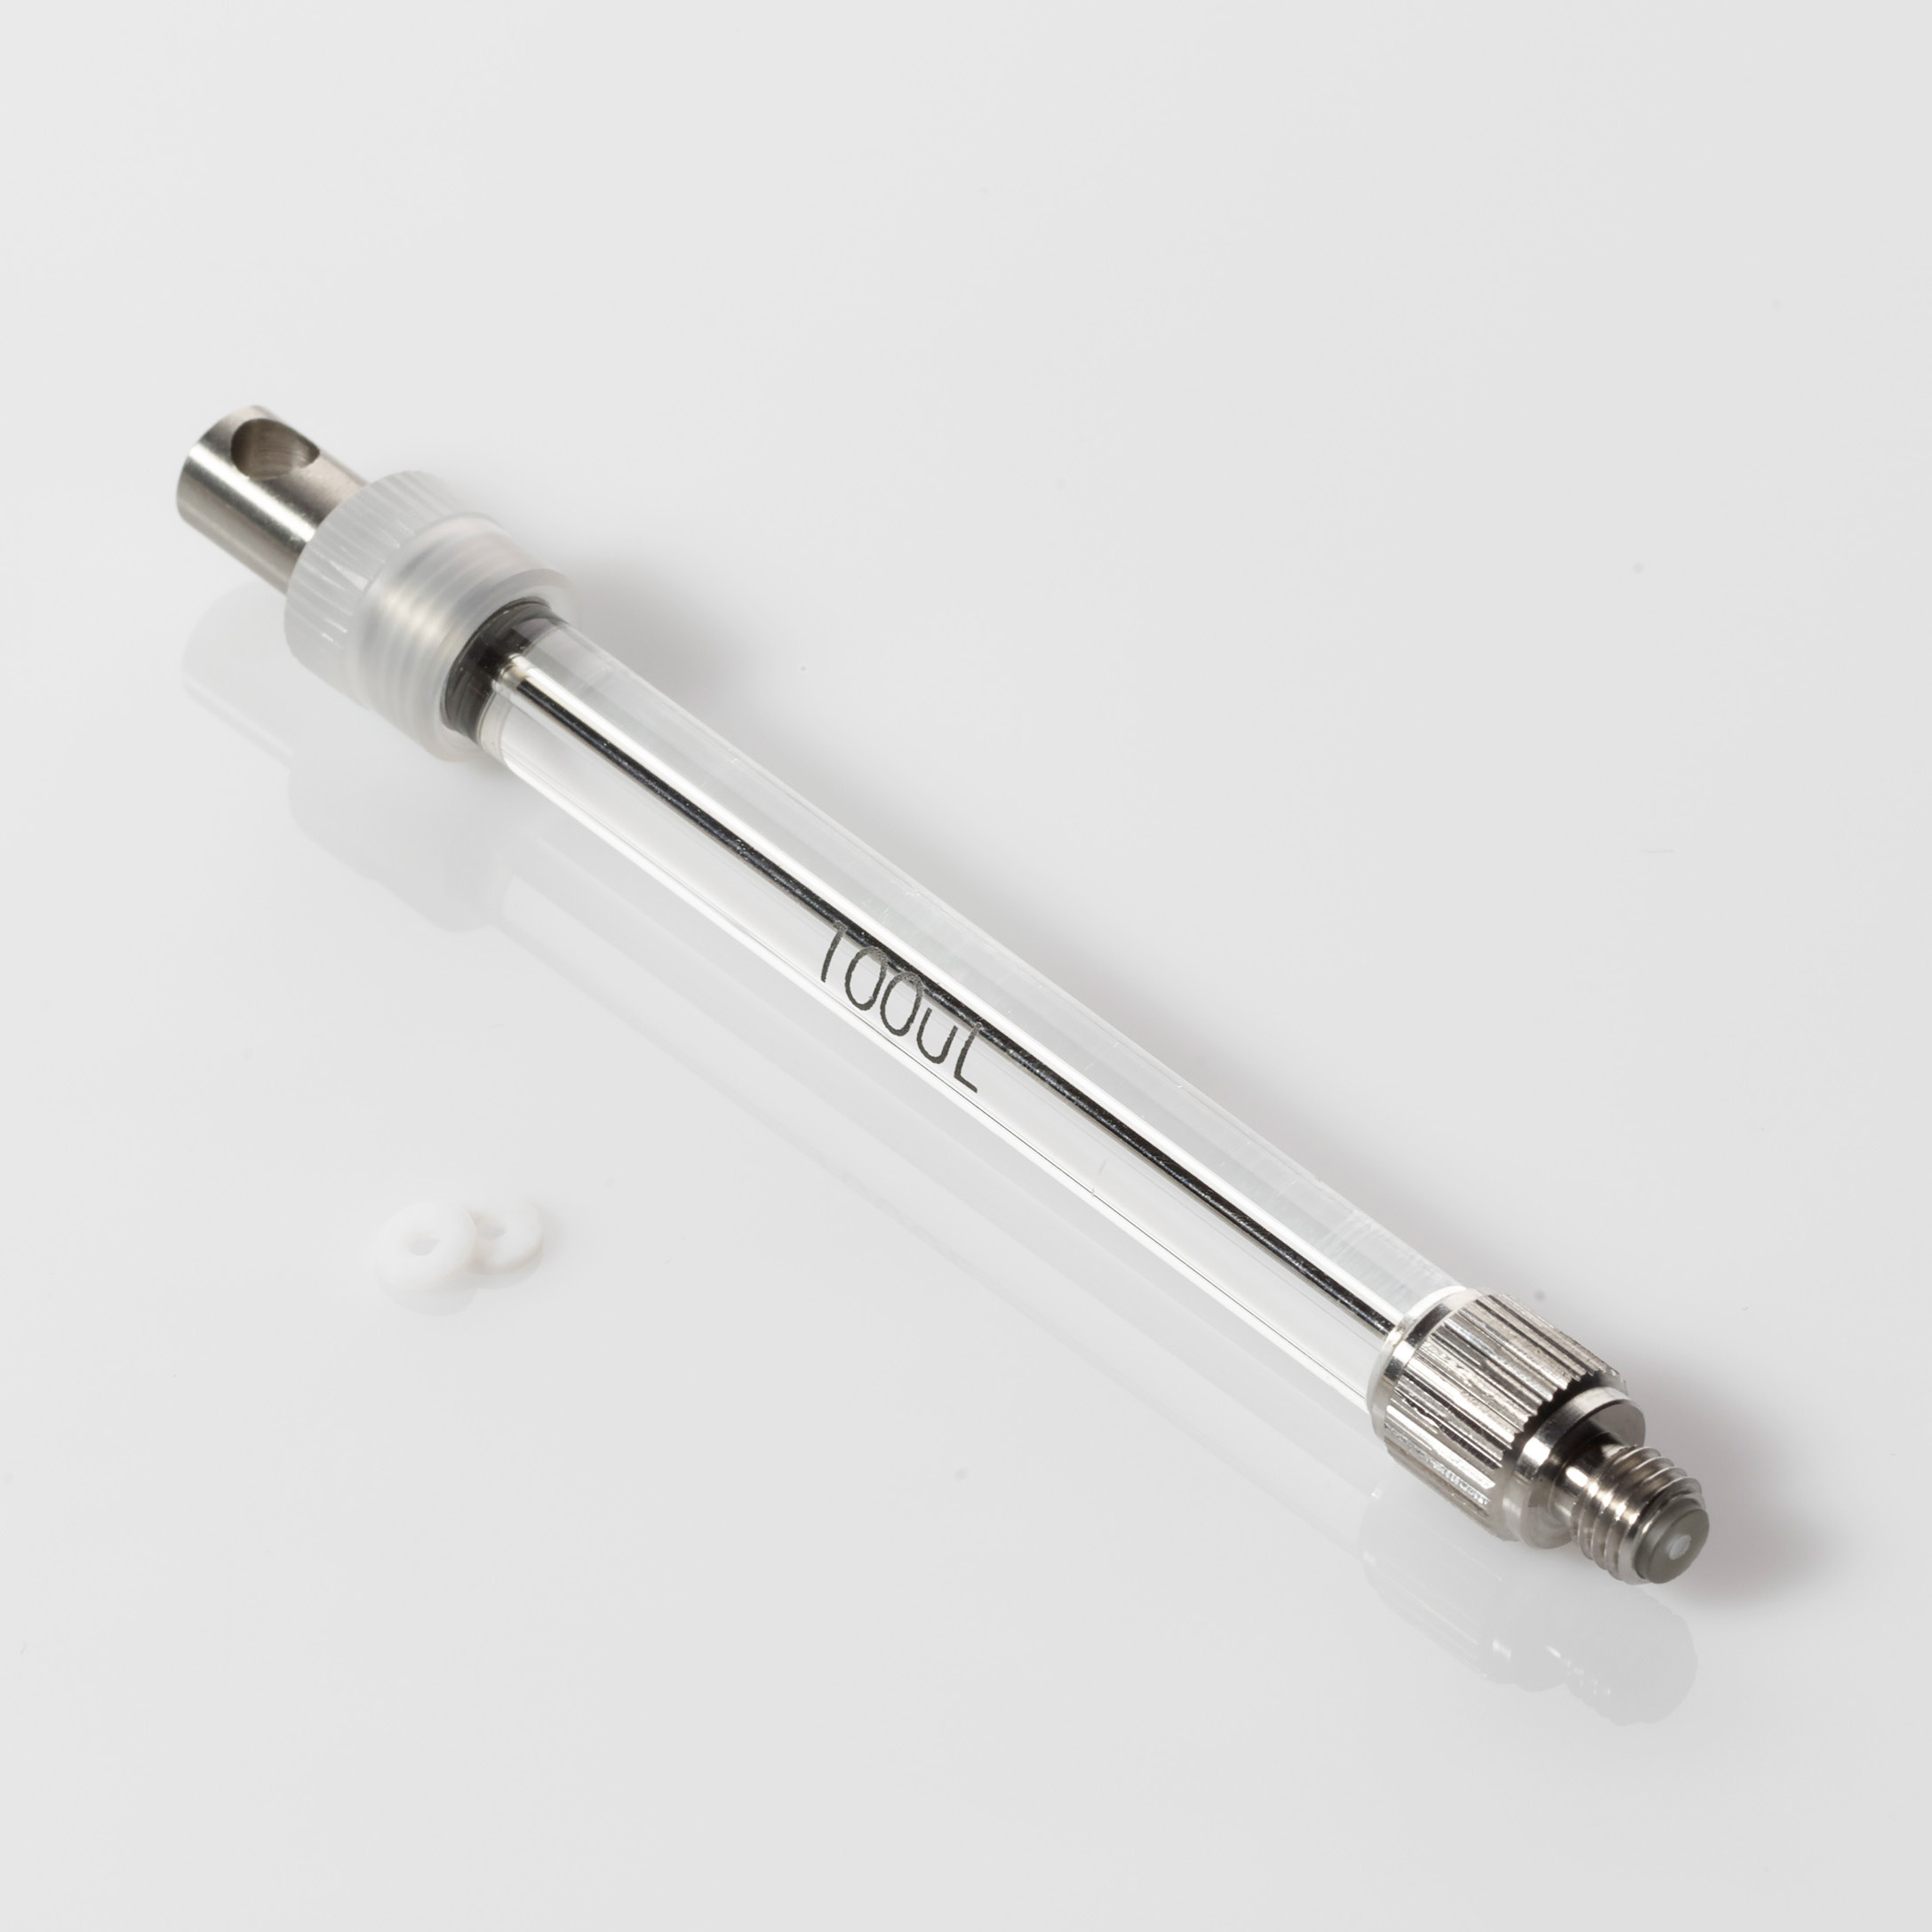 100μL Syringe for WPS-3000 Series